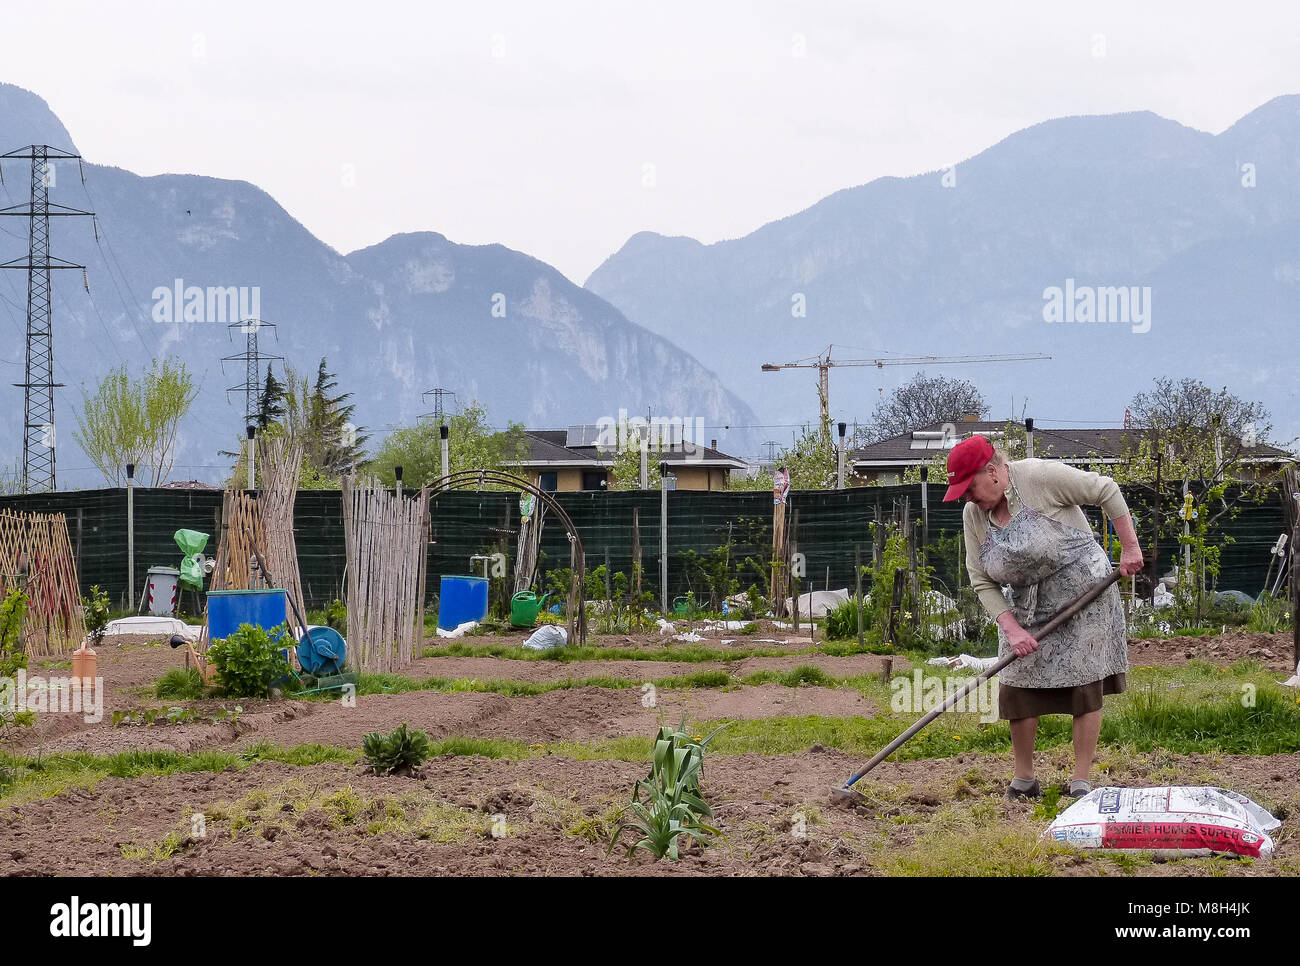 Gruppo di piazzole di Allotment dove la terra è parcelata per i pensionati a crescere lì proprio verdure come un hobby - Trento, Italia settentrionale, Europa Foto Stock